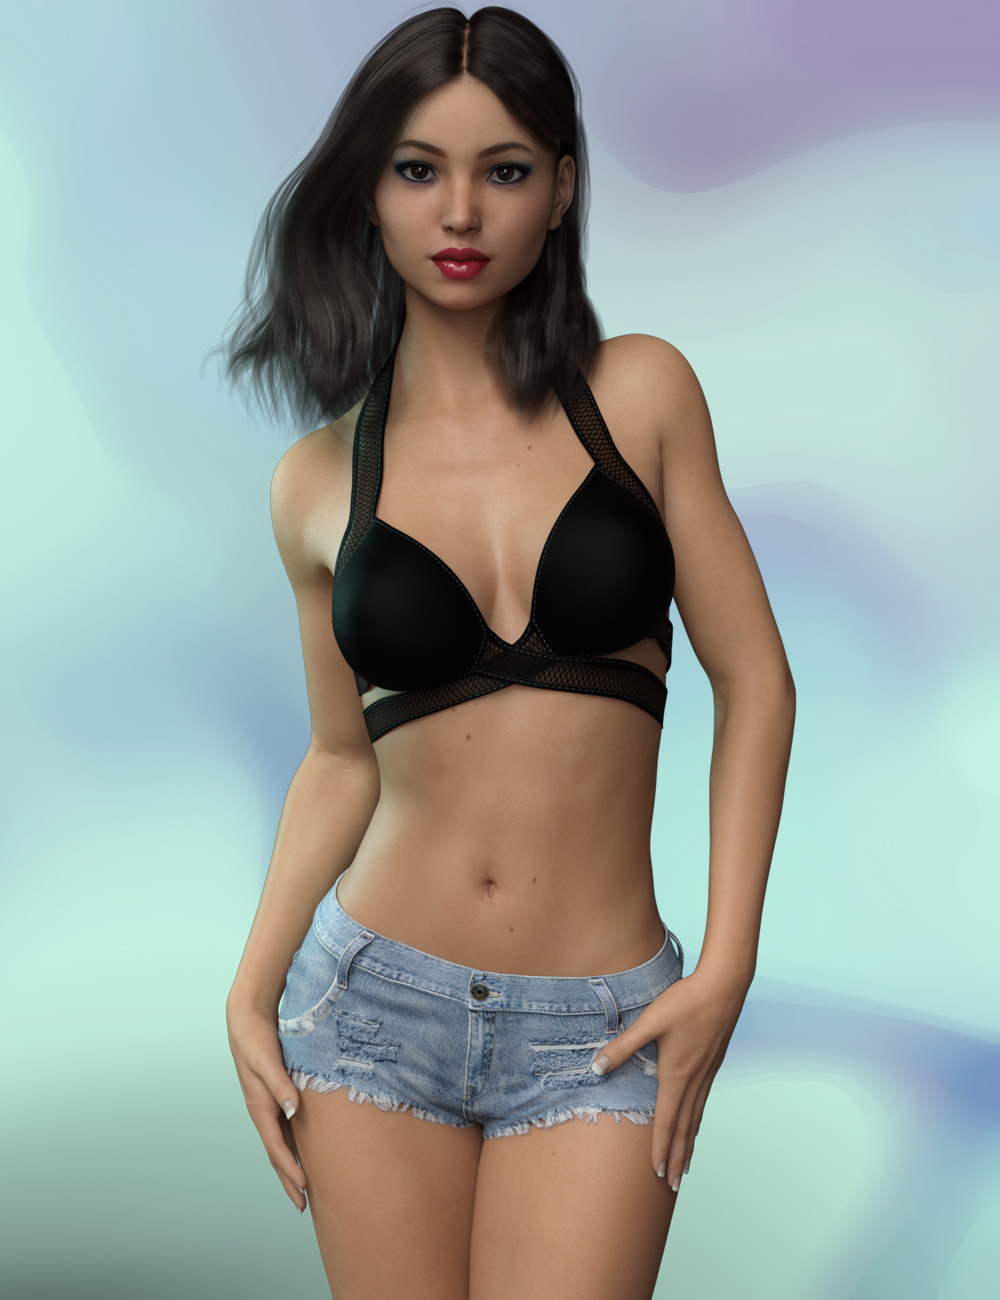 FWSA Matti HD for Genesis 3 Female by: Fred Winkler ArtSabby, 3D Models by Daz 3D